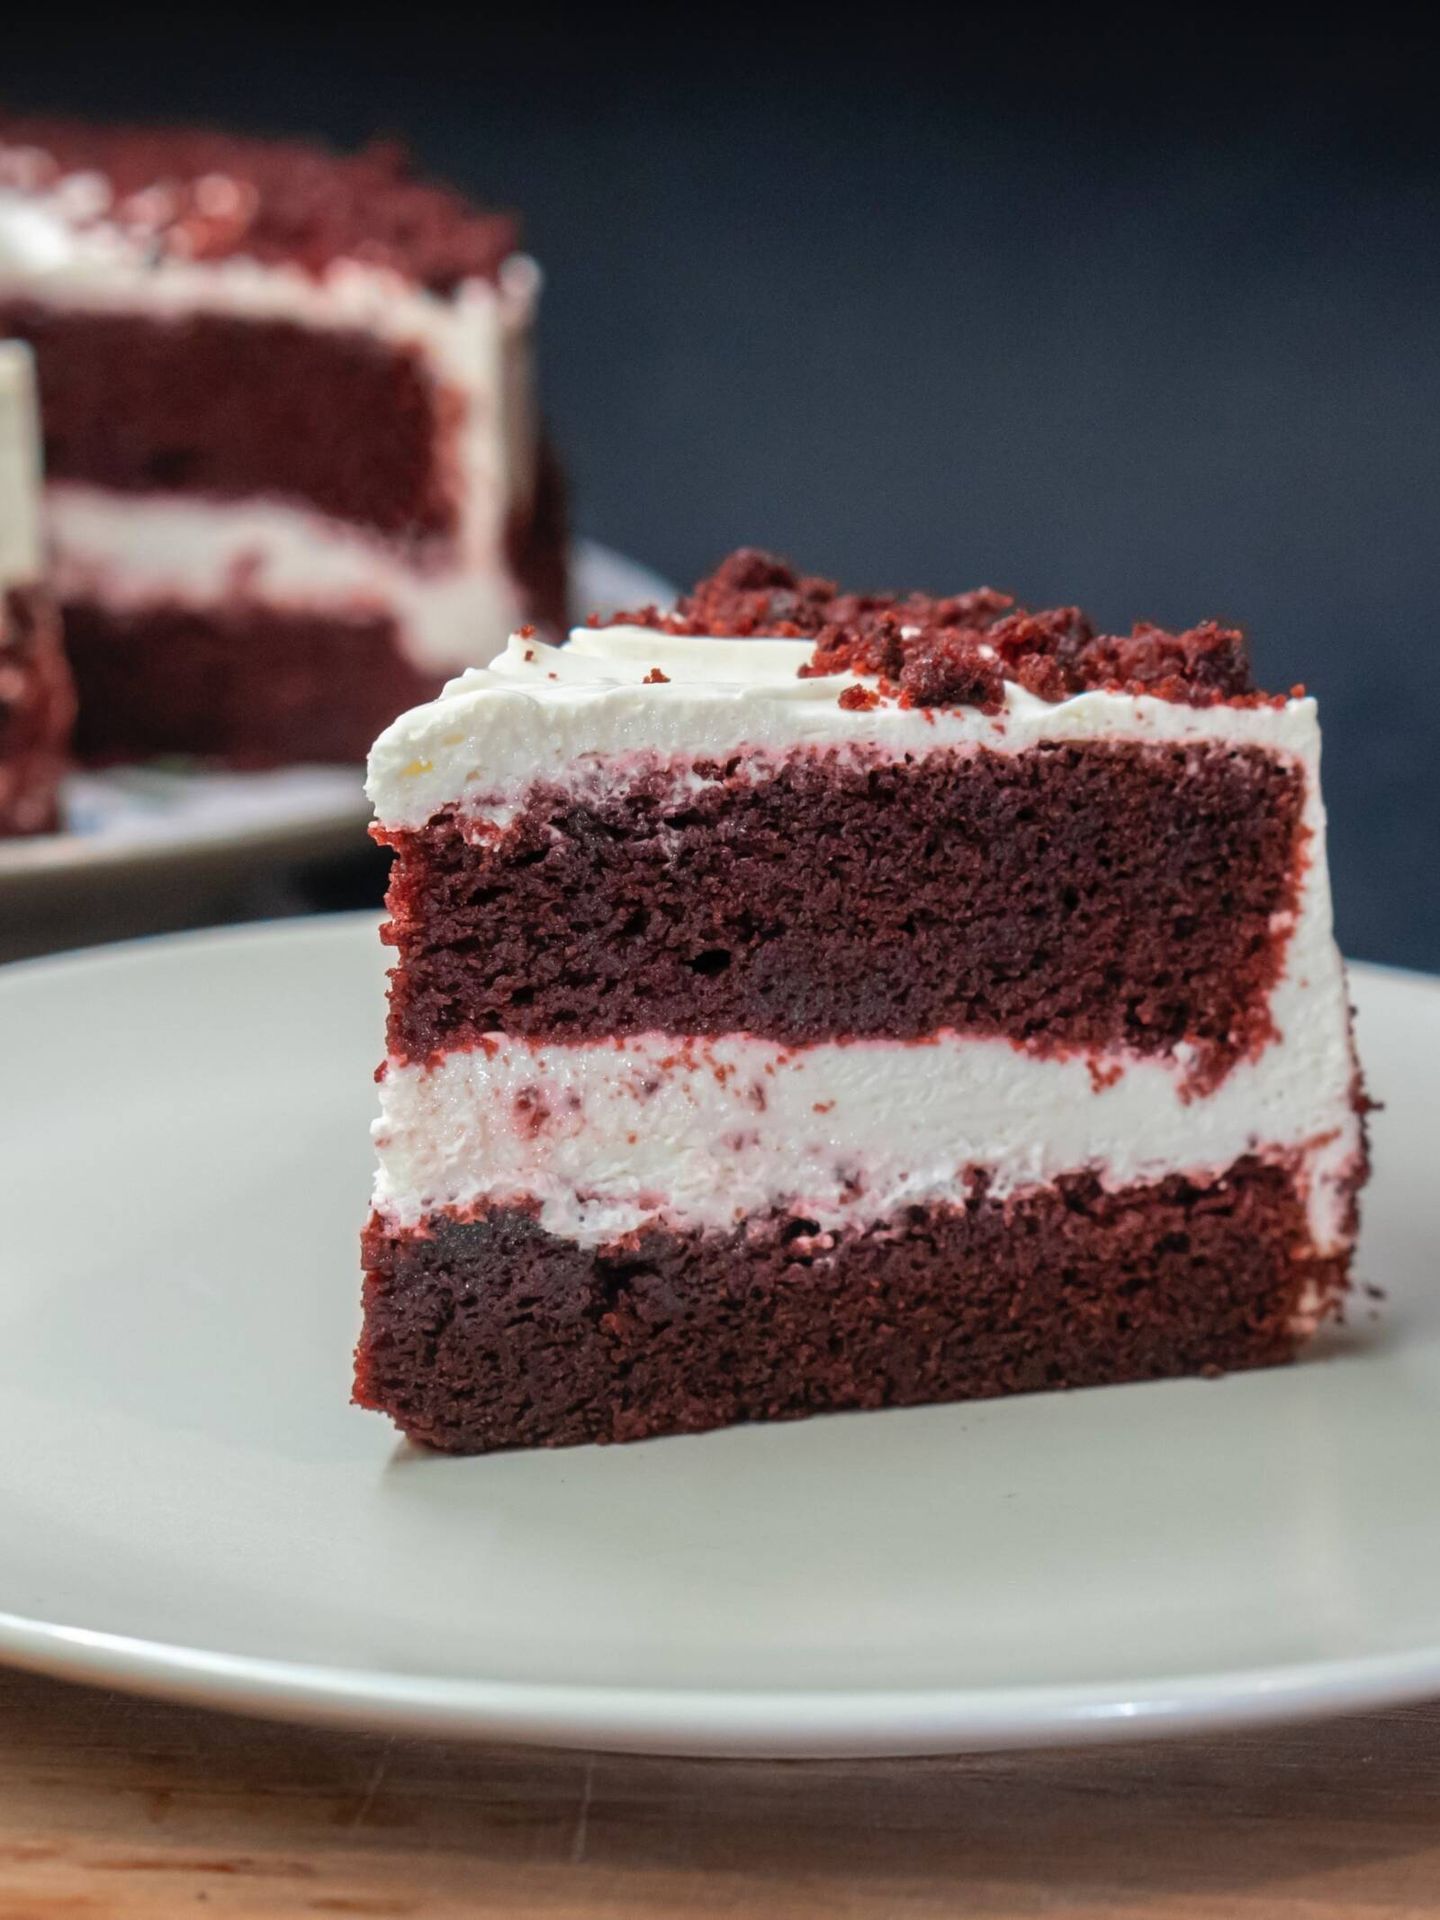 Descubre el sabor único de la tarta red velvet. (Unsplash/Amir V. Alih)